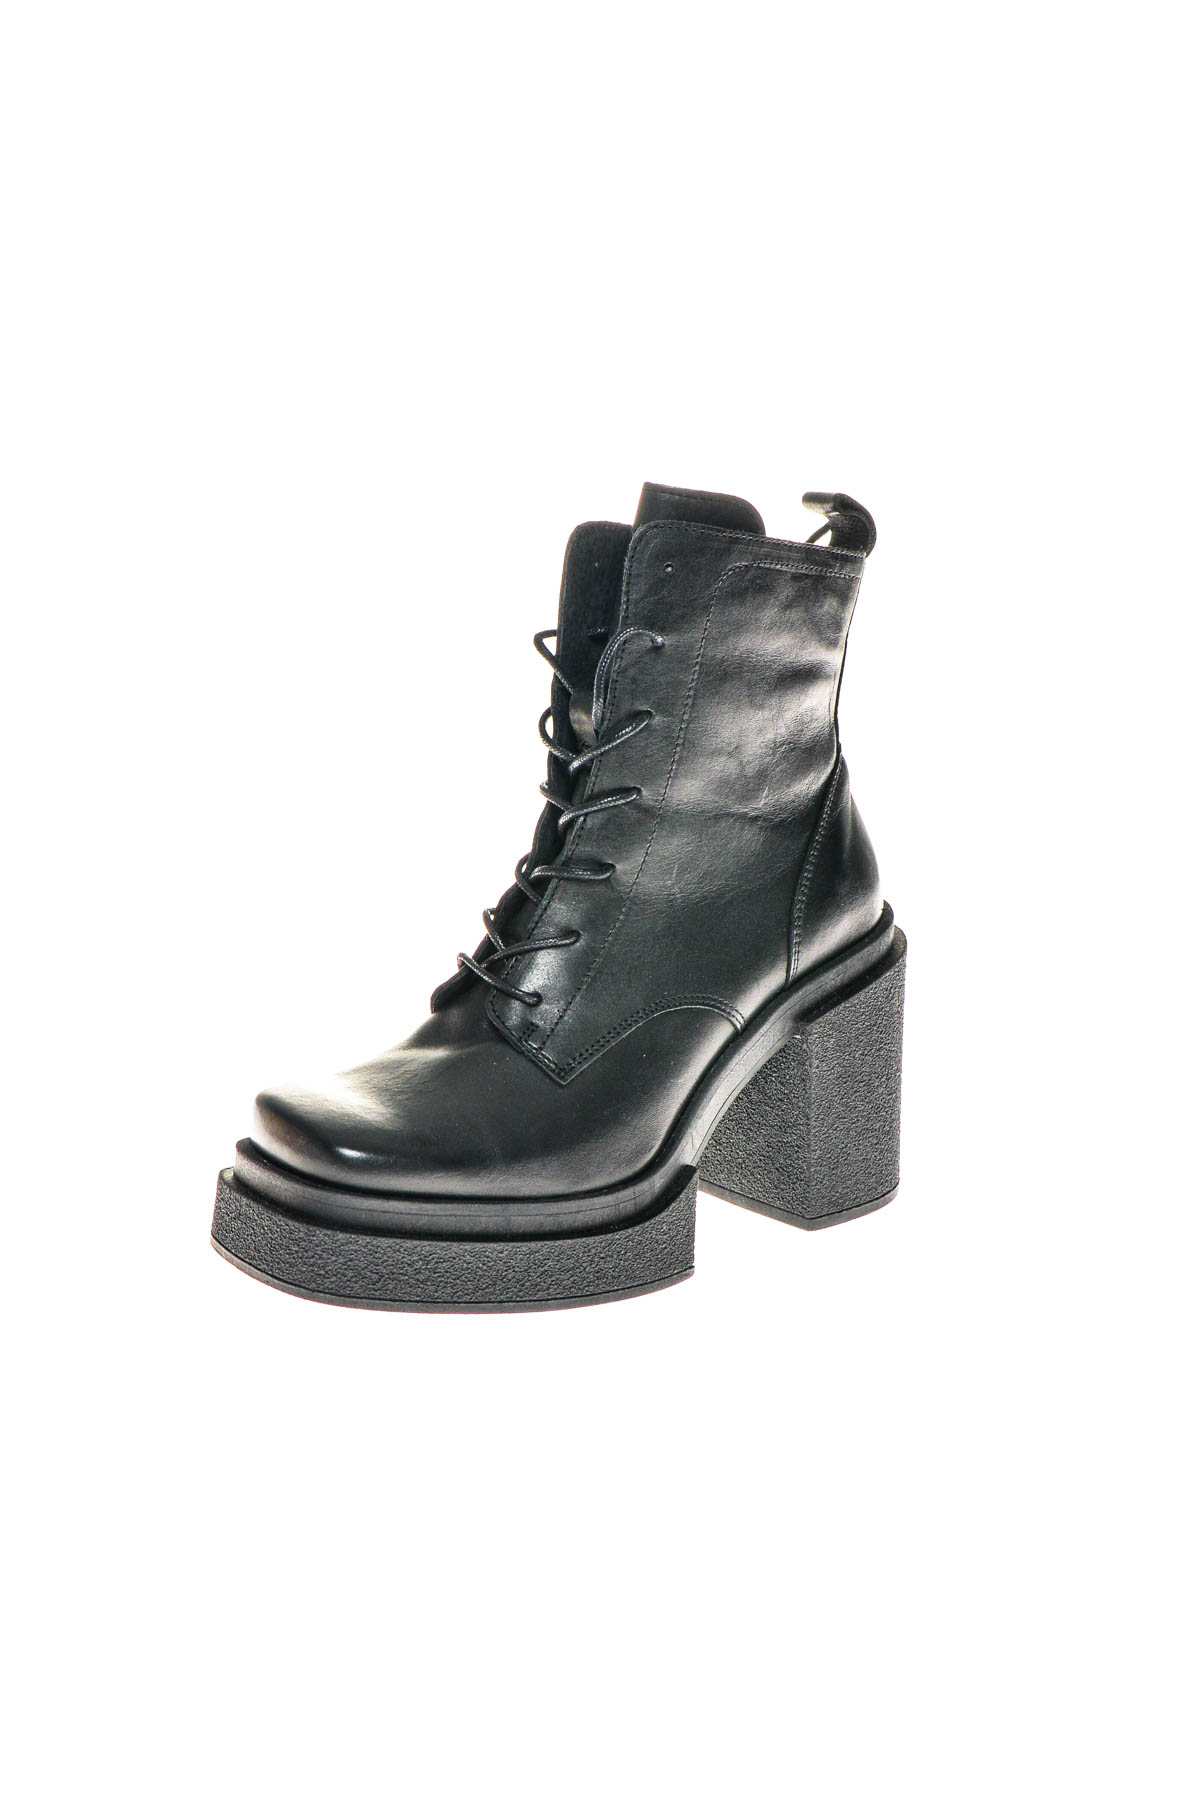 Women's boots - Zign - 1